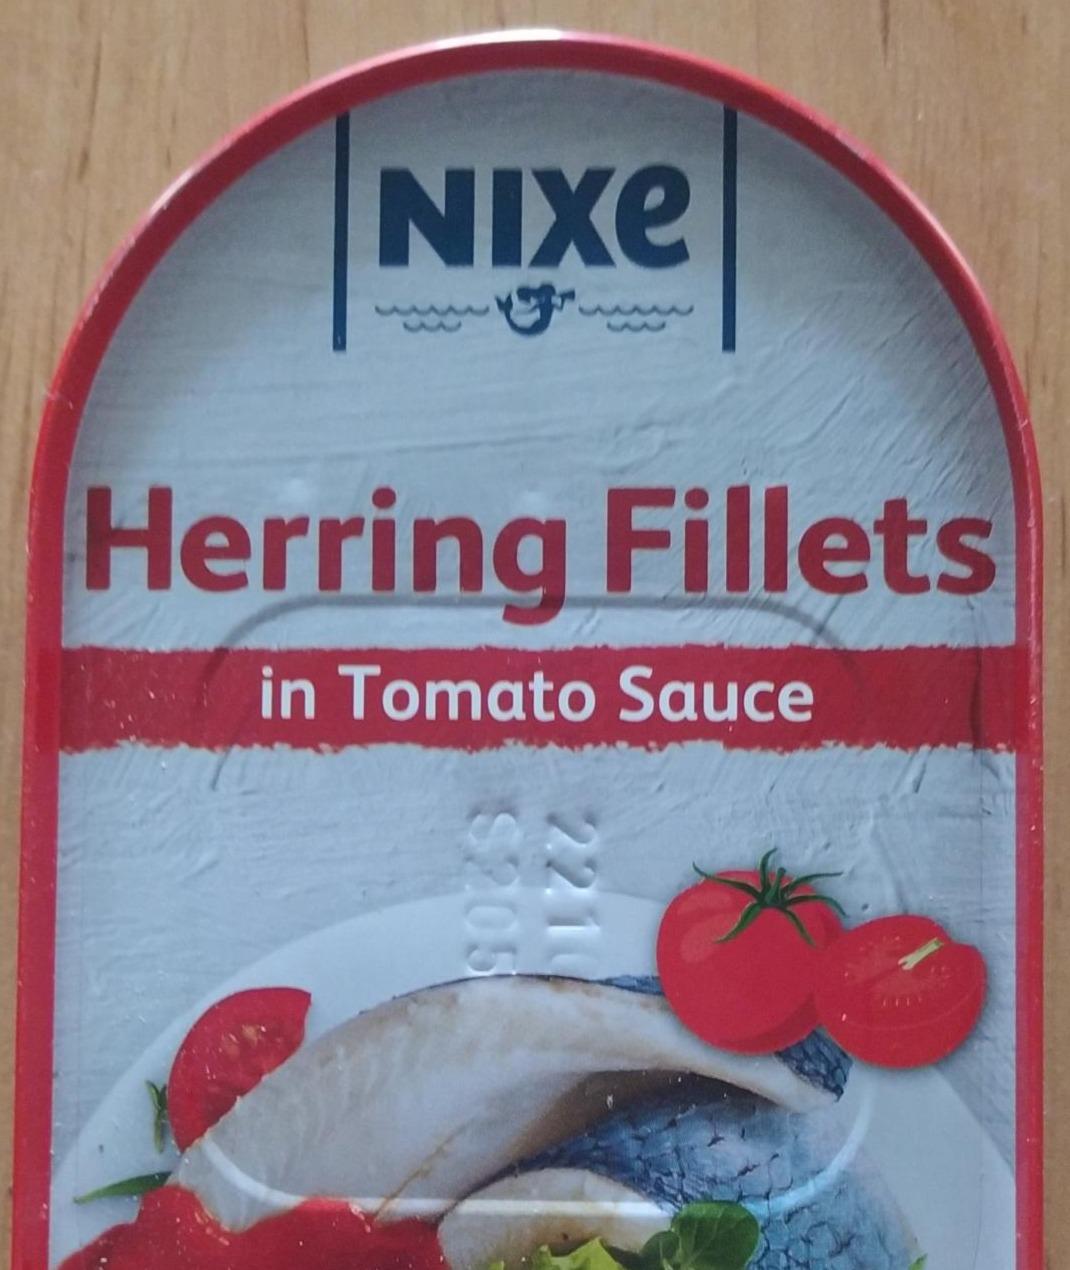 Fotografie - Herring Fillets in Tomato Sauce (sleďové filety s kůží v rajčatové omáčce) Nixe